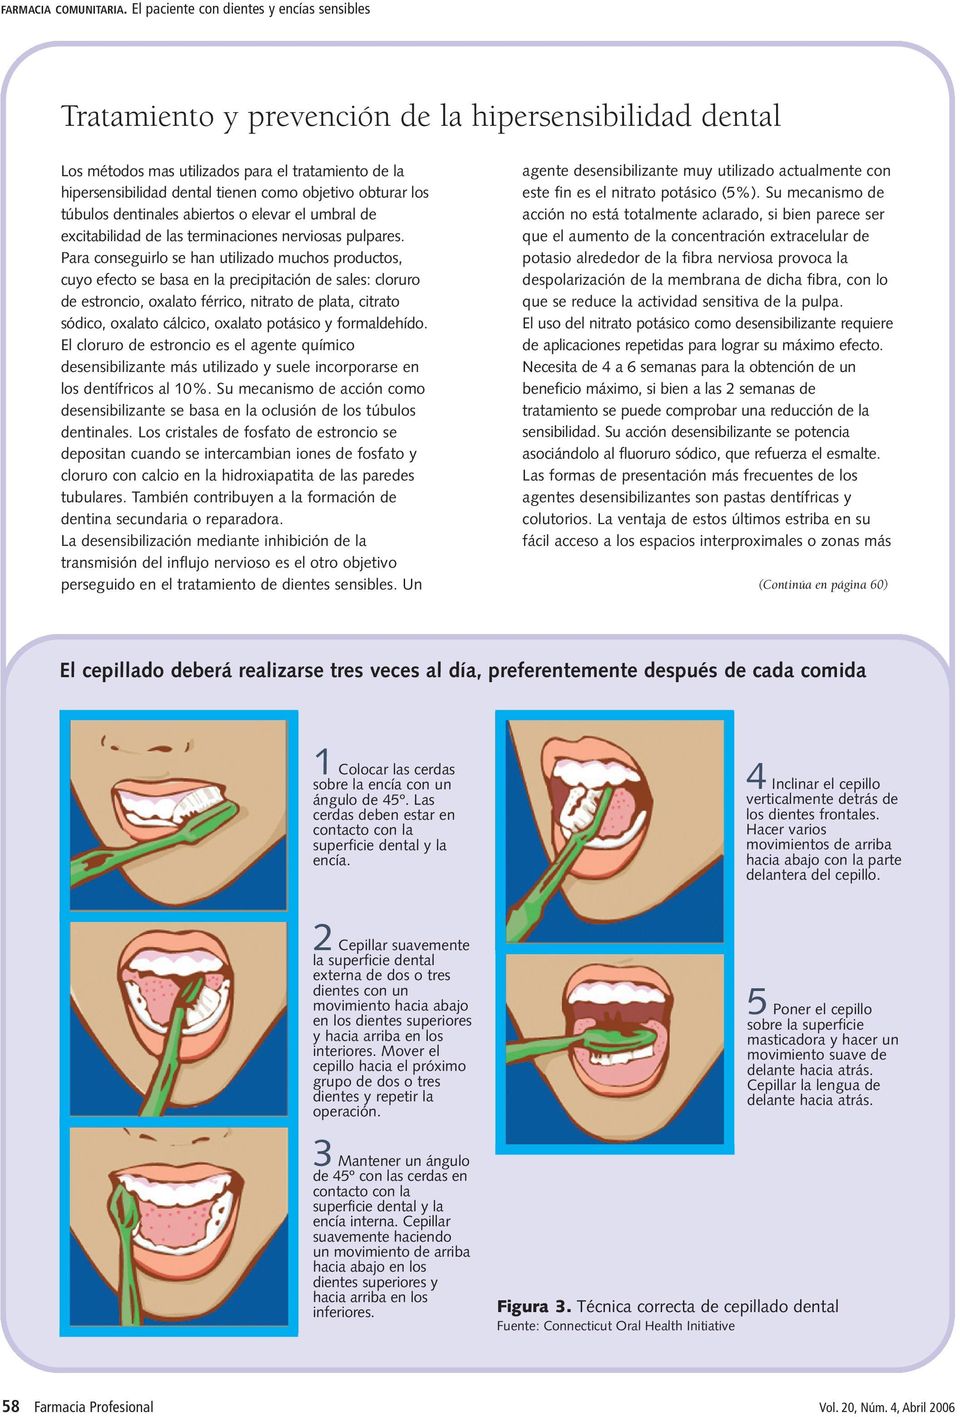 obturar los túbulos dentinales abiertos o elevar el umbral de excitabilidad de las terminaciones nerviosas pulpares.